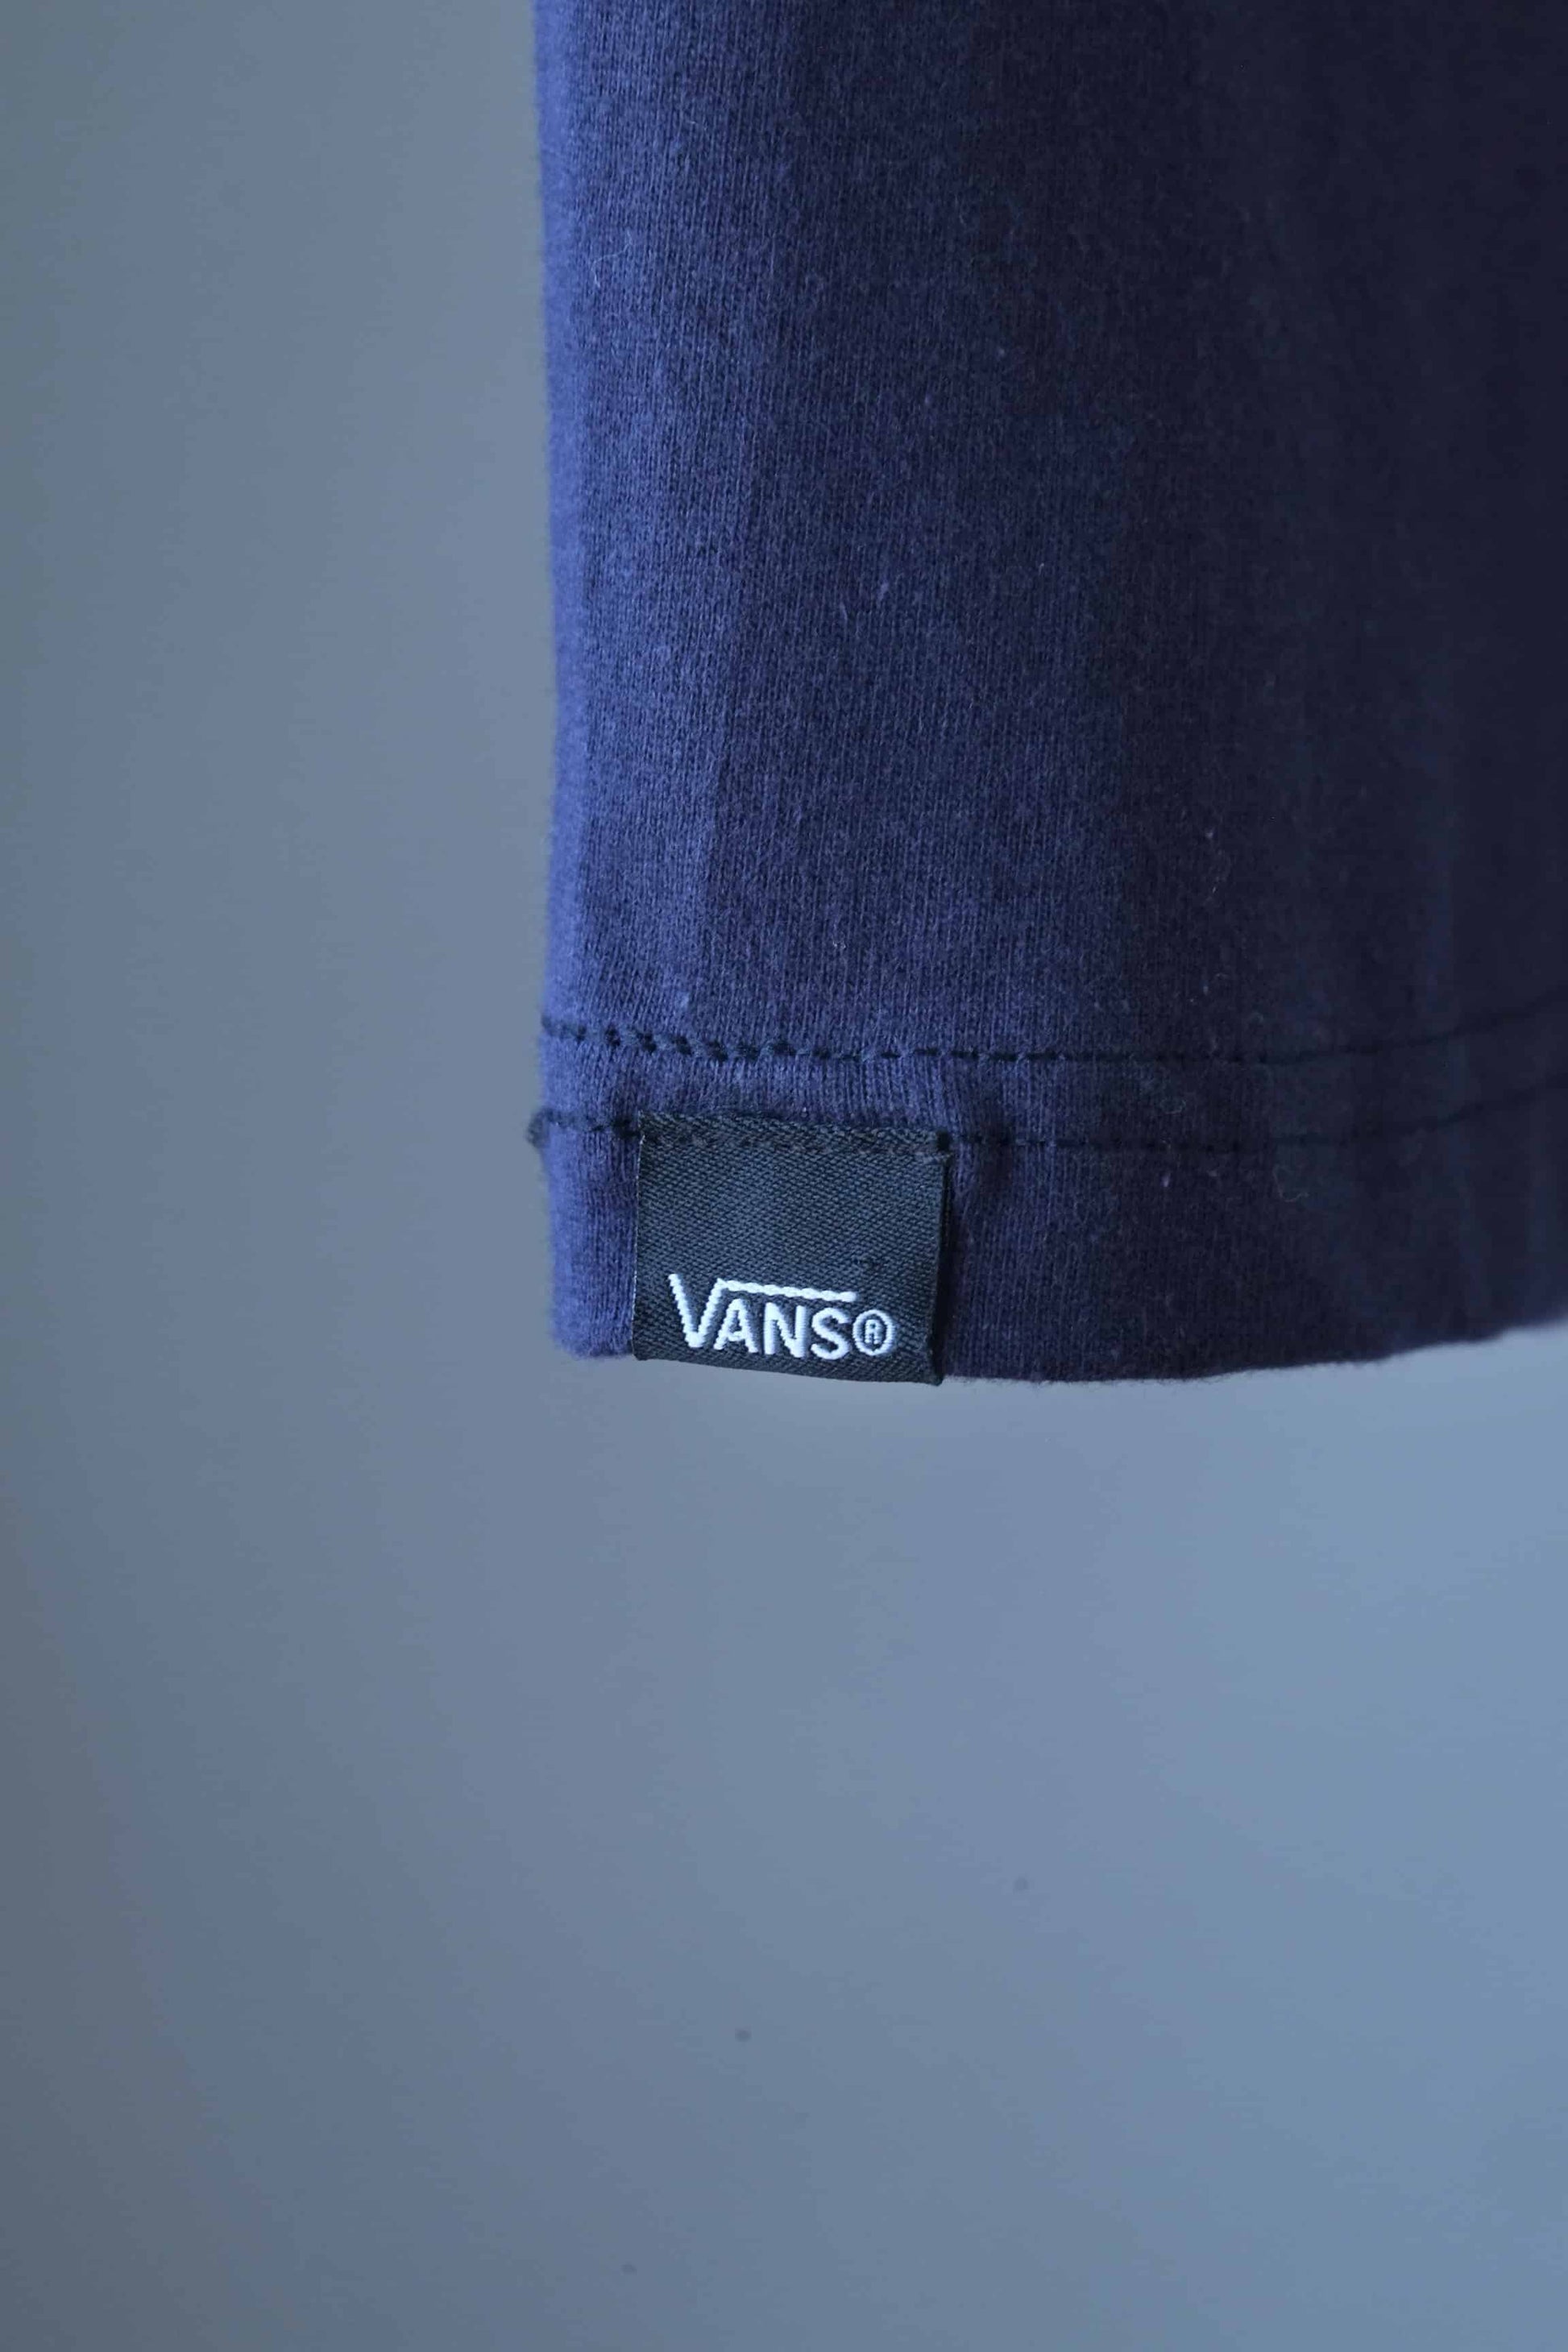 Vintage Vans Shirt label